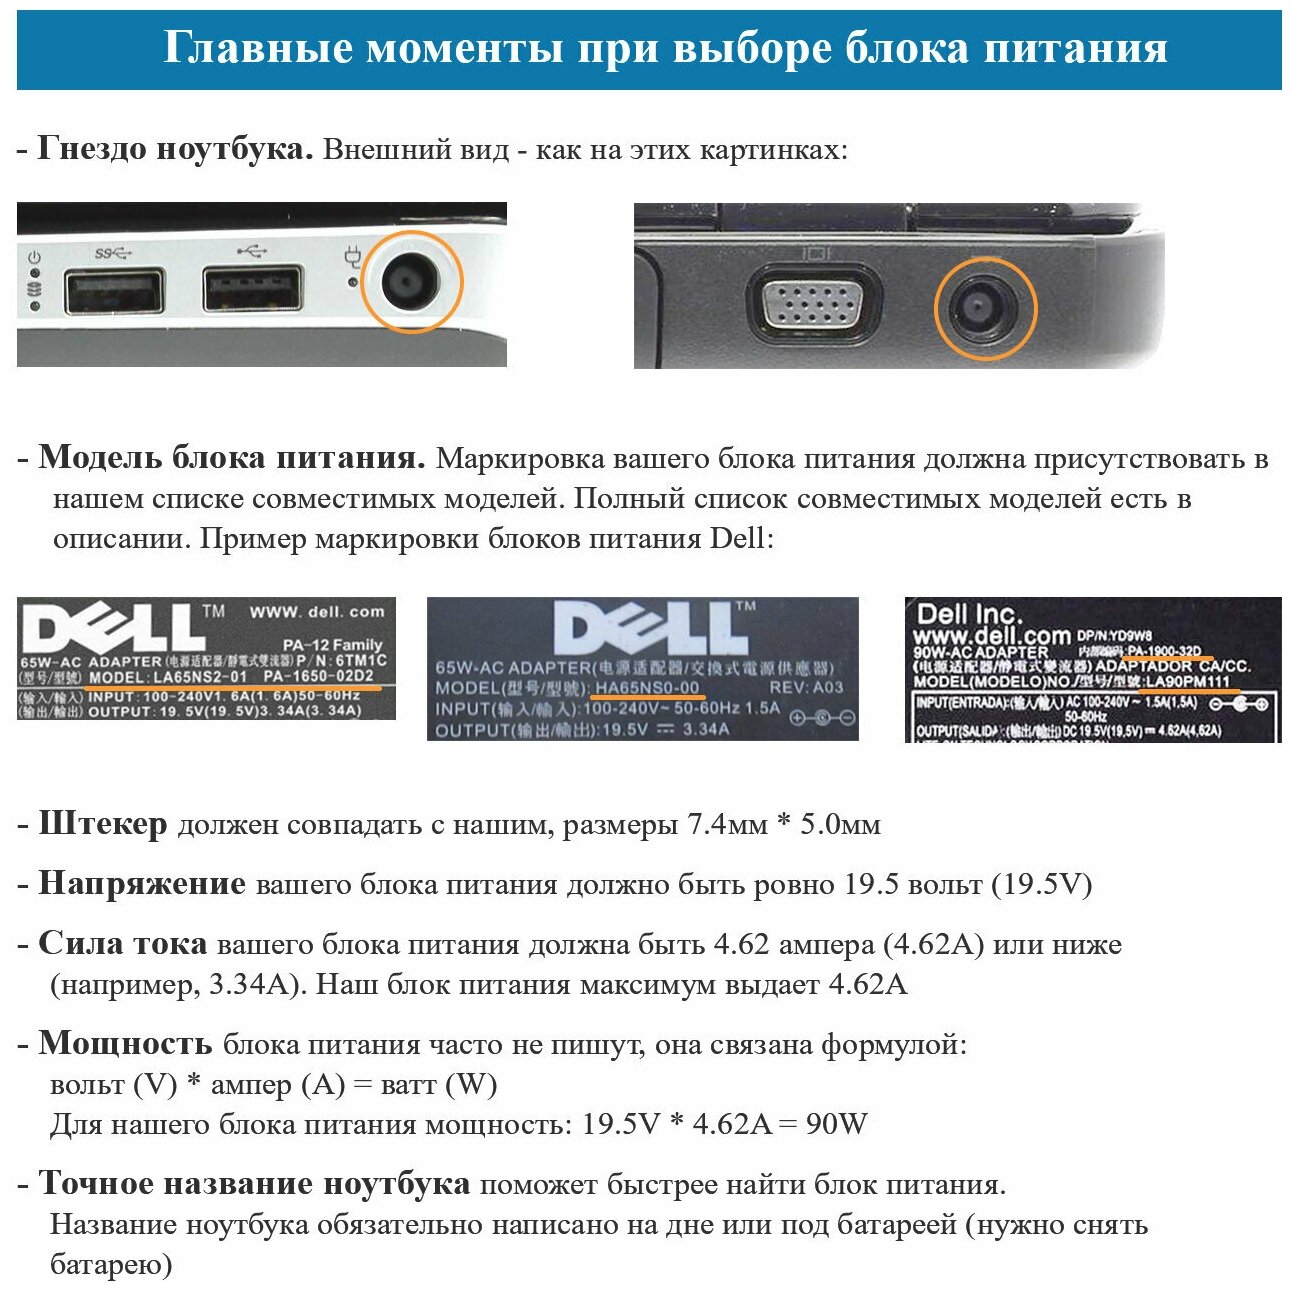 Блок питания для ноутбука Dell 19.5V, 4.62A, 90W (штекер 7.4х5.0) для Inspiron N5110, 3521, 3537, 5520, 5521, M5110, N5010, N7110, Latitude E6410